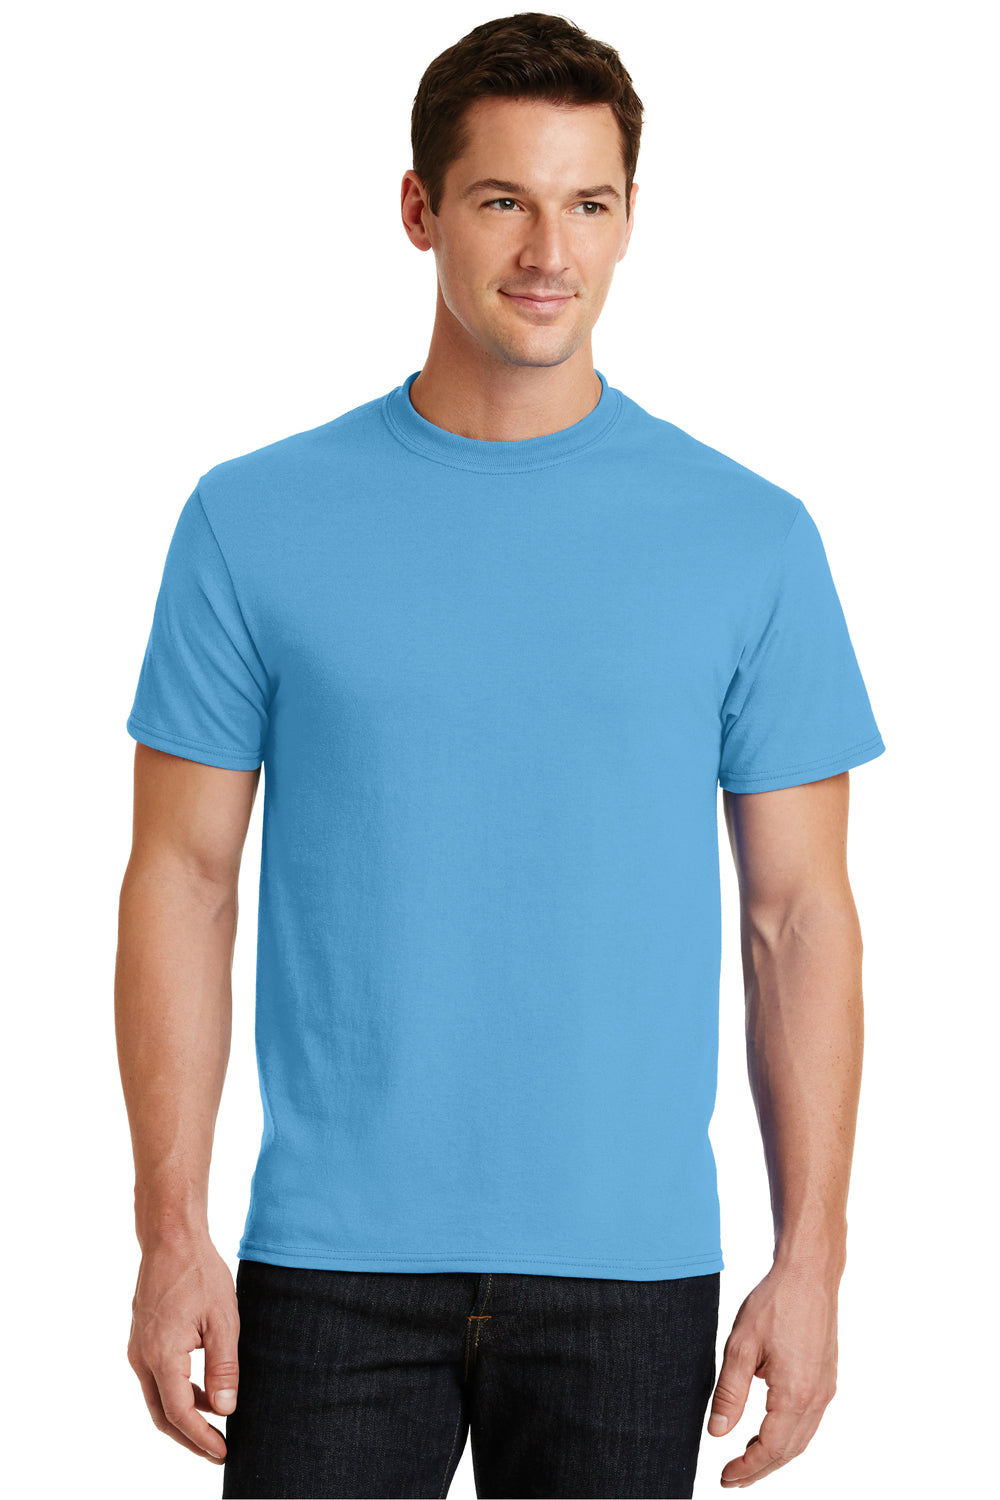 Port & Company PC55 Mens Core Short Sleeve Crewneck T-Shirt Aqua Blue Front